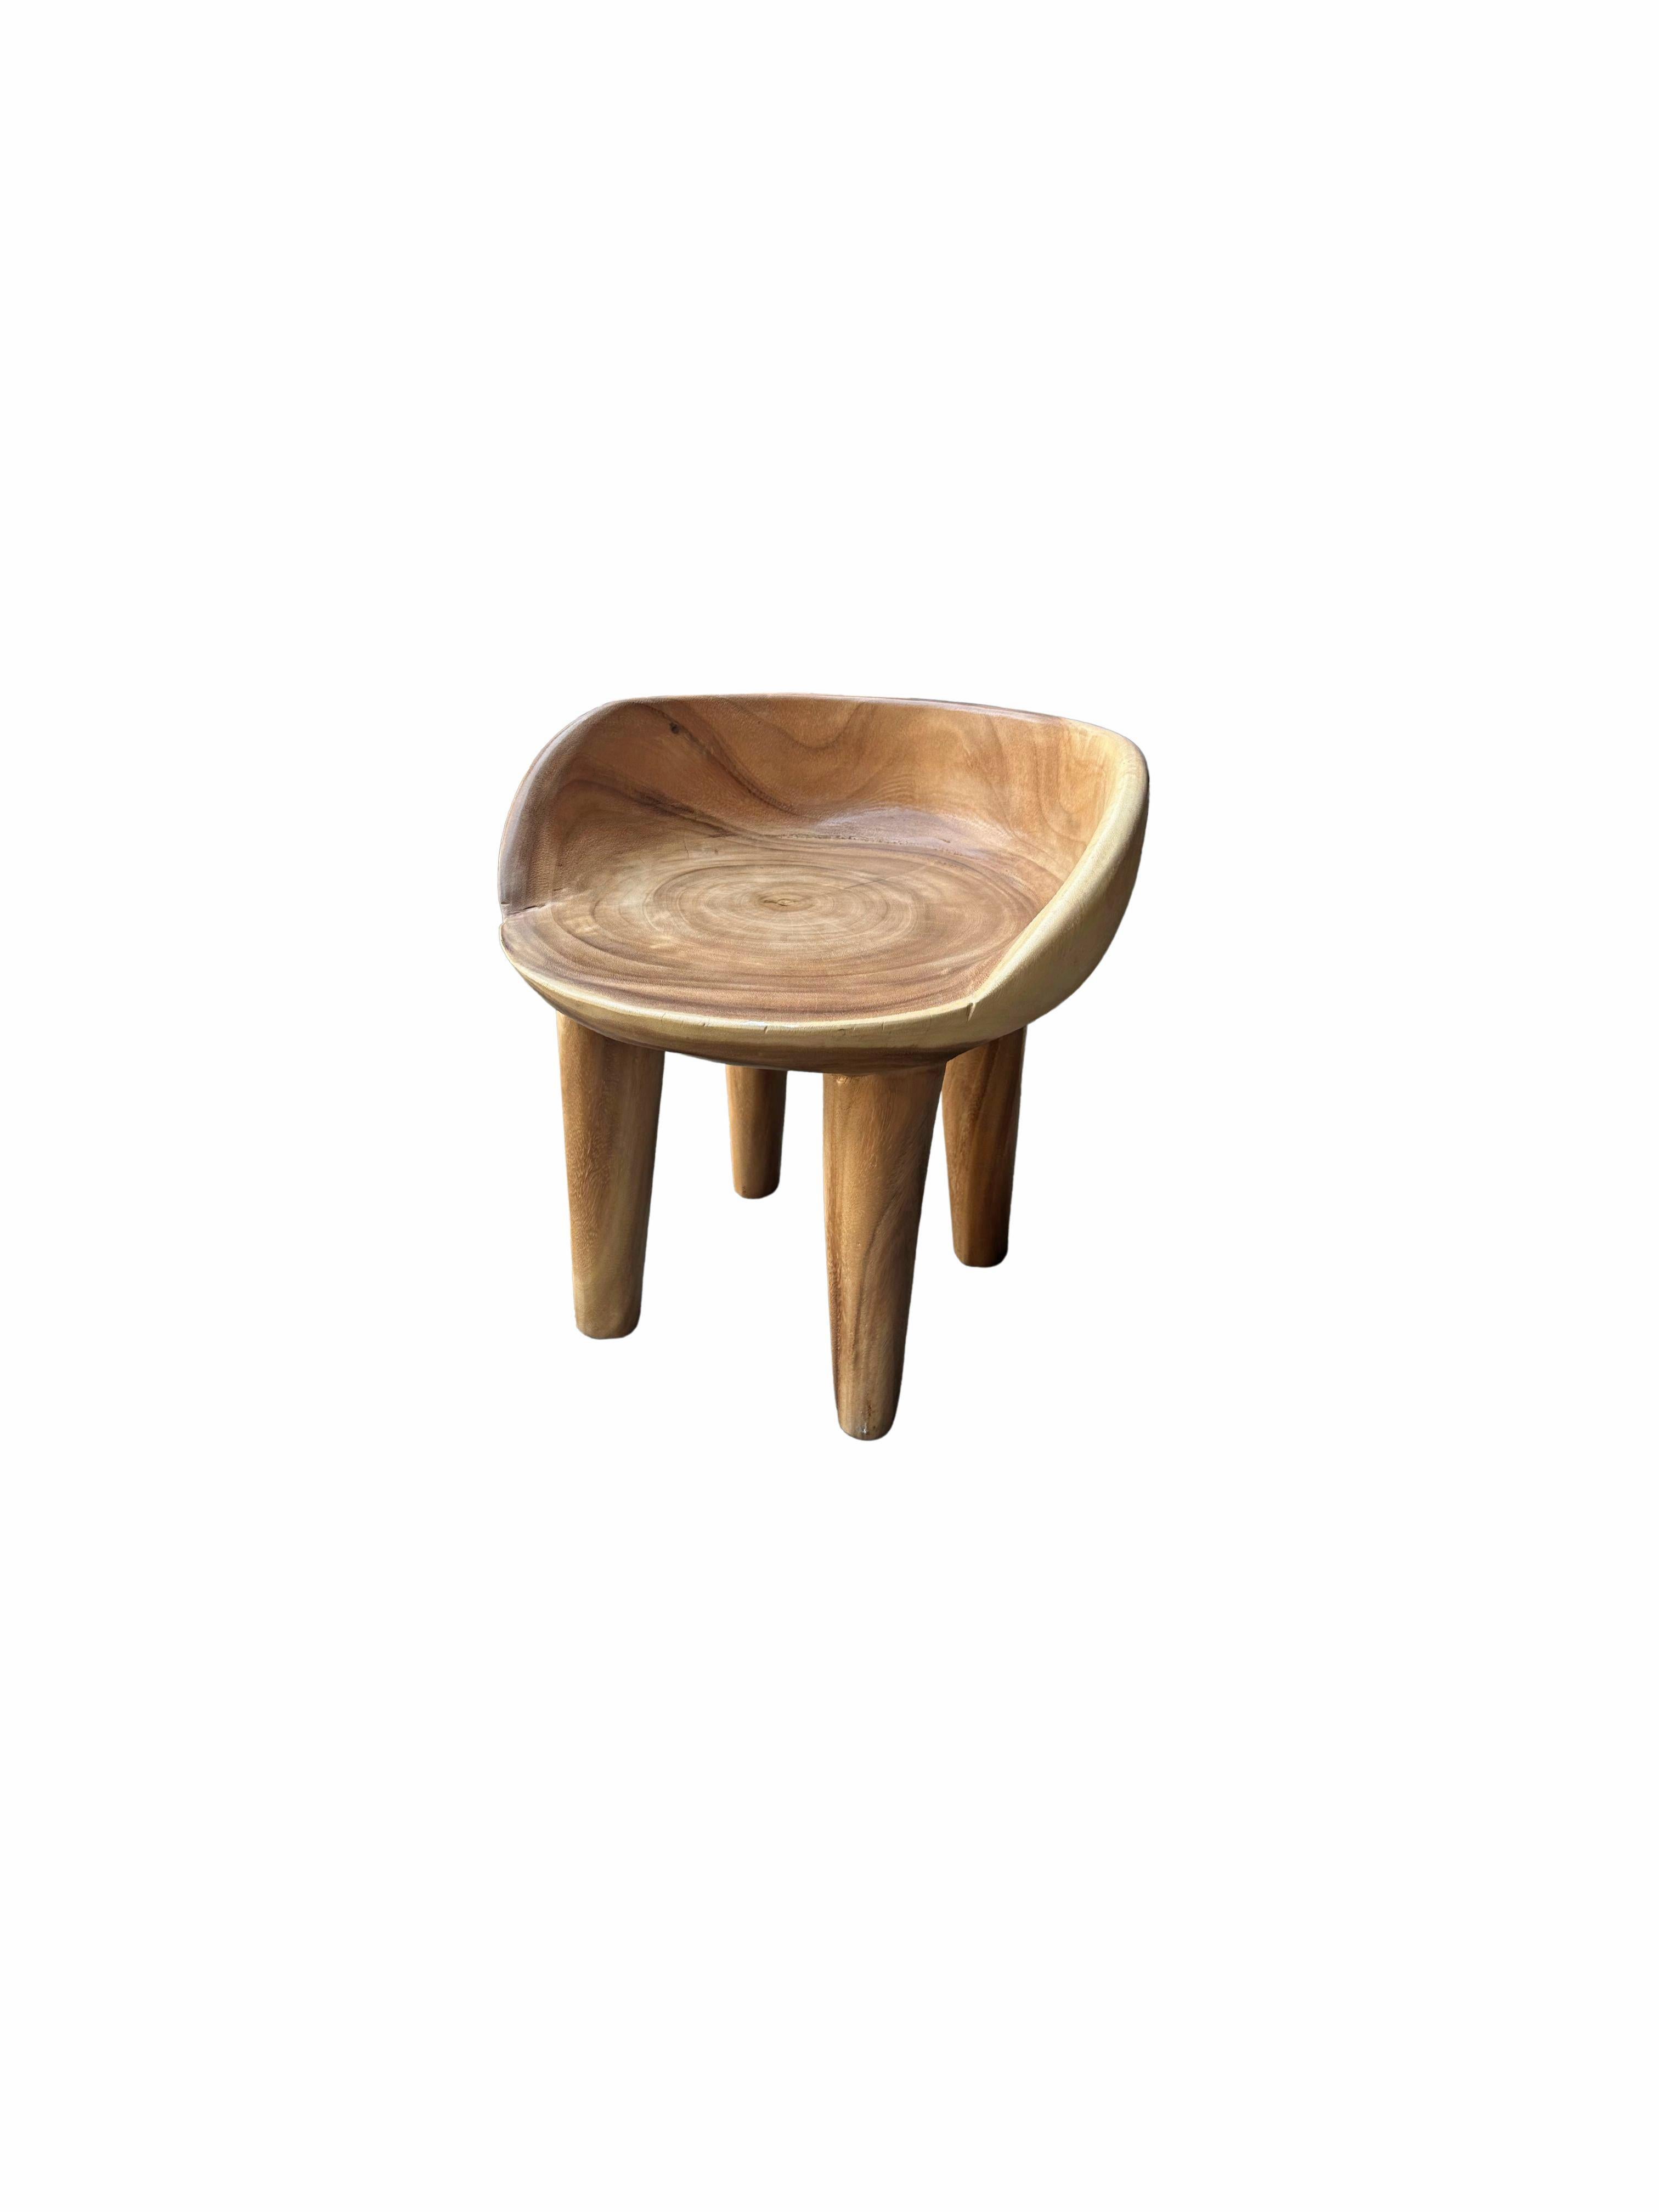 Cette chaise merveilleusement sculpturale a été fabriquée à partir d'un seul bloc de bois de suar. La chaise repose sur 4 pieds élancés. Son pigment neutre lui permet de s'adapter à tous les espaces. Cette chaise présente une finition naturelle avec